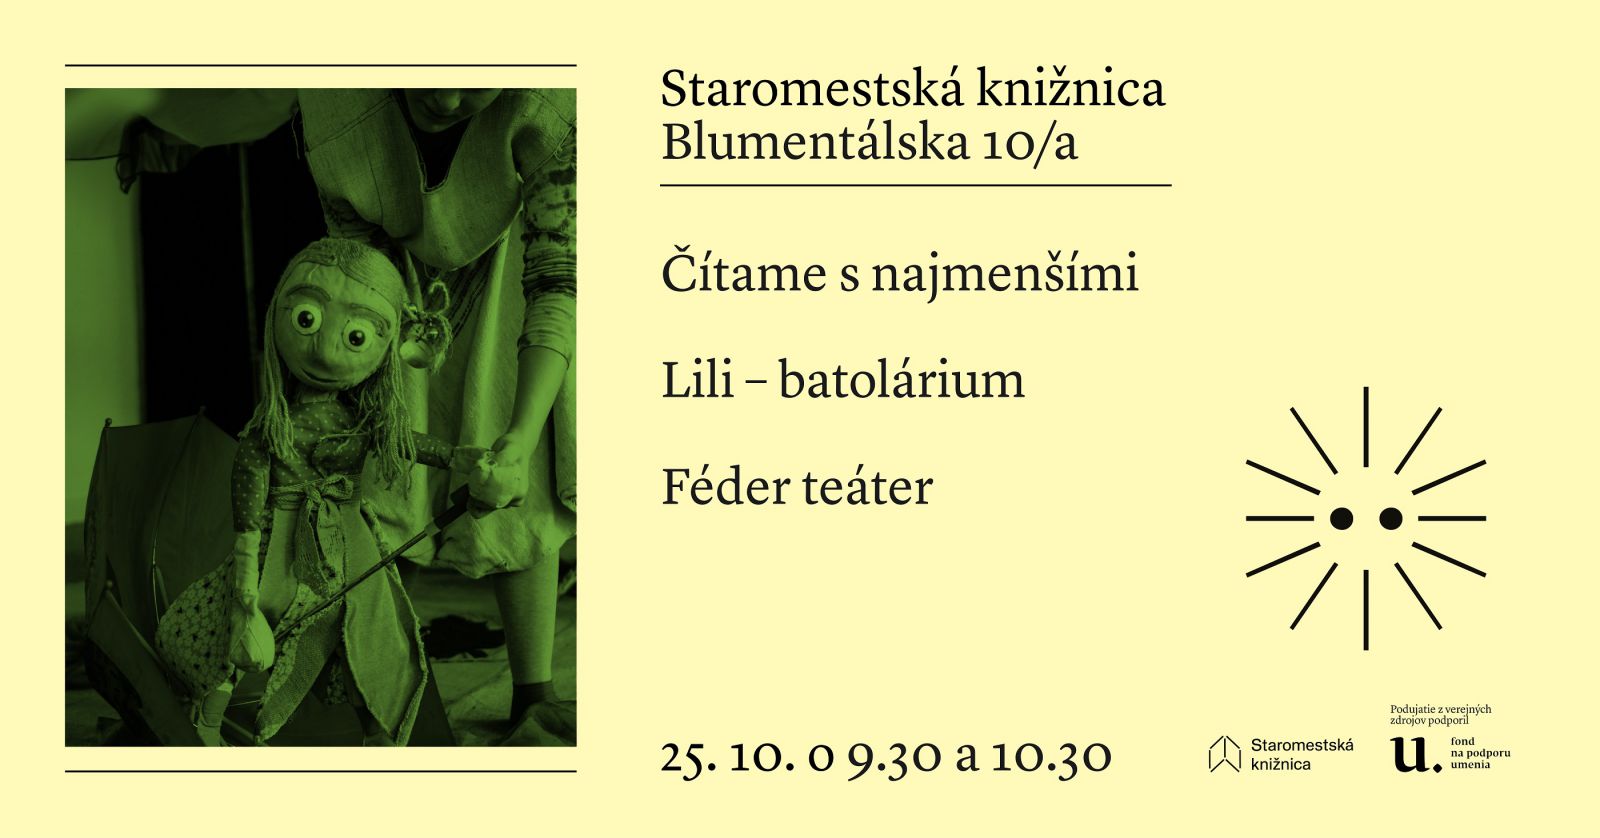 Čítame s najmenšími - Lili - batolárium v stredu 25. 10. o 9.30 a 10.30 v Staromestskej knižnici na Blumentálskej 10/a